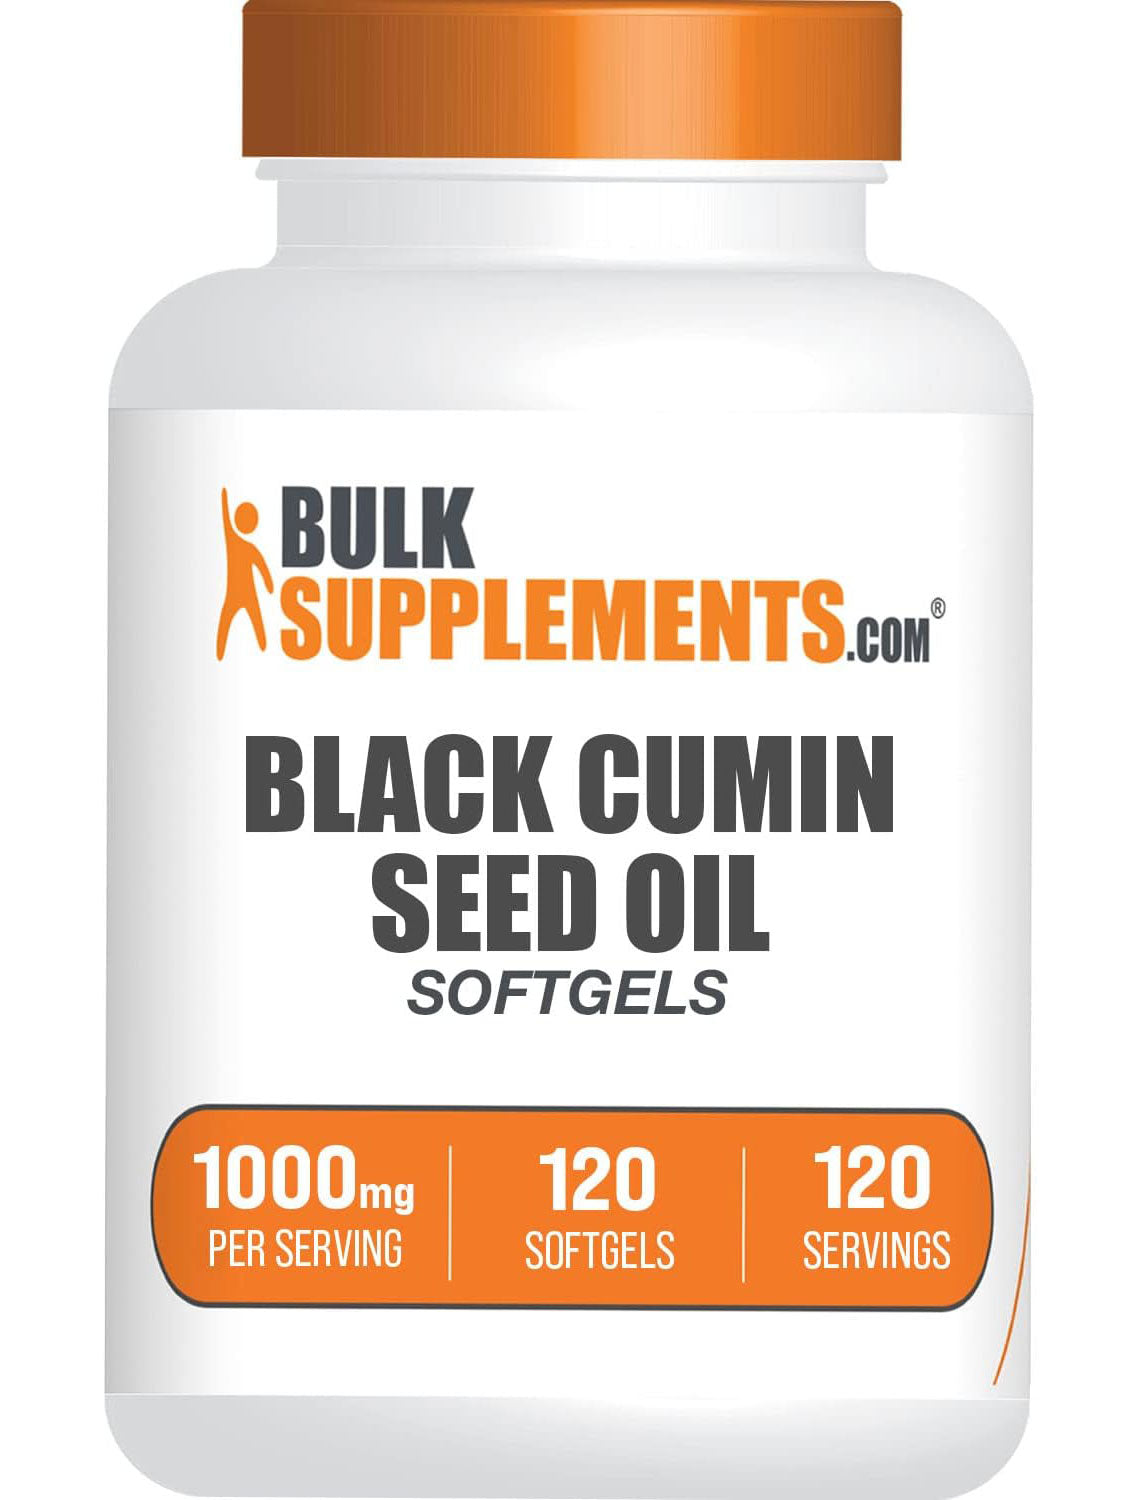 BulkSupplements.com Black Seed Oil 1000mg per serving 120 Softgels Bottle